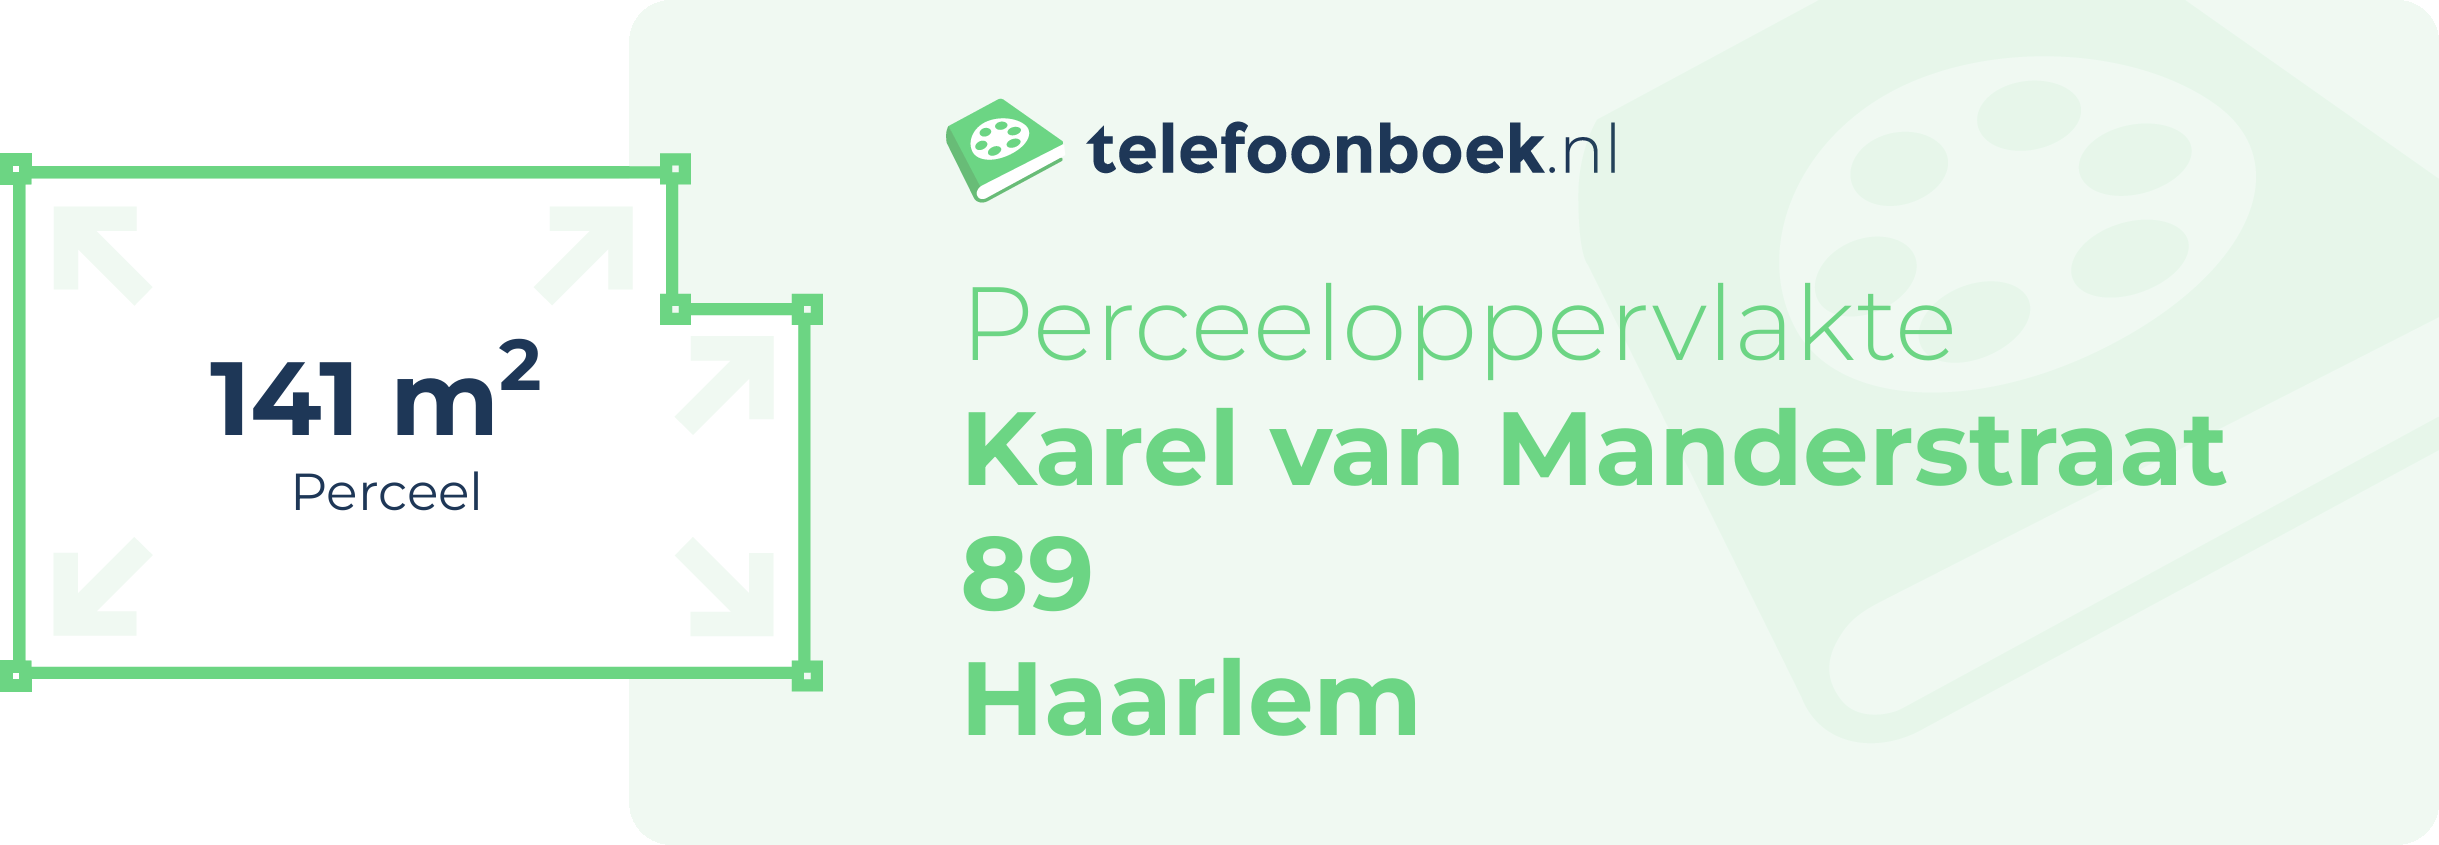 Perceeloppervlakte Karel Van Manderstraat 89 Haarlem